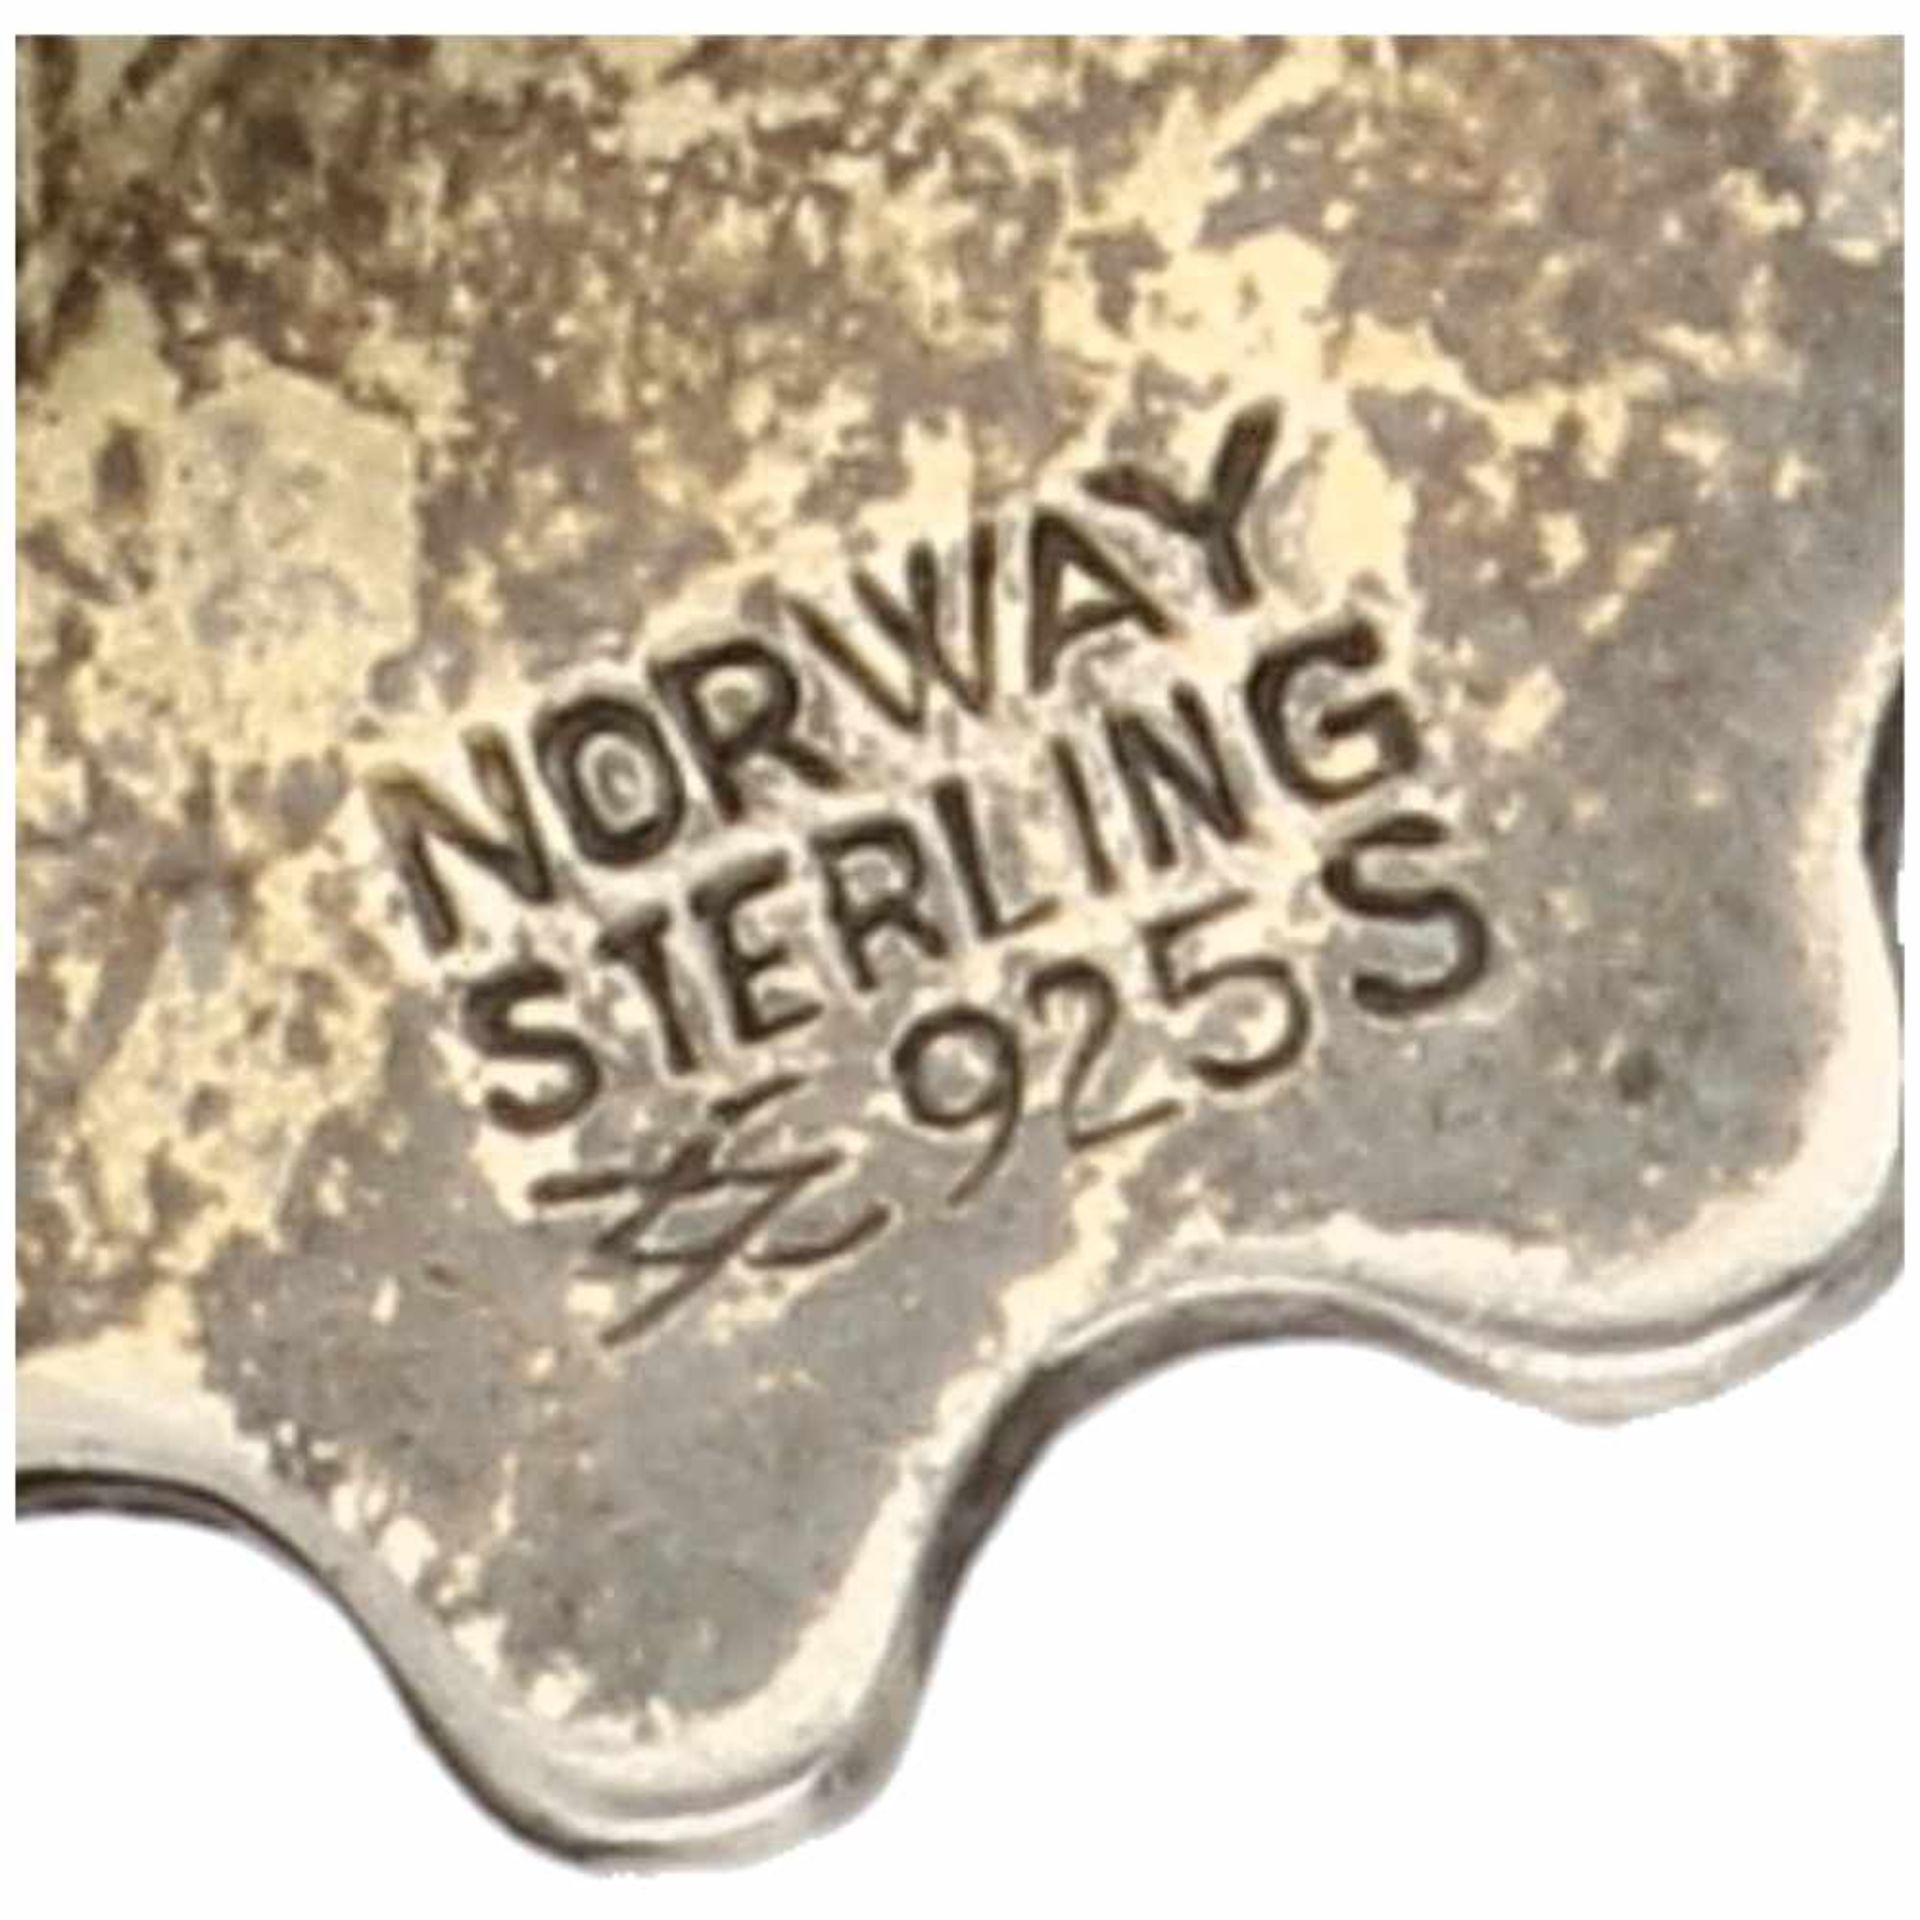 Zilveren Aksel Holmsen broche, blauwe emaille - 925/1000.Noorwegen, Sandefjord. LxB: 8,1 x 3,2 cm. - Bild 3 aus 3